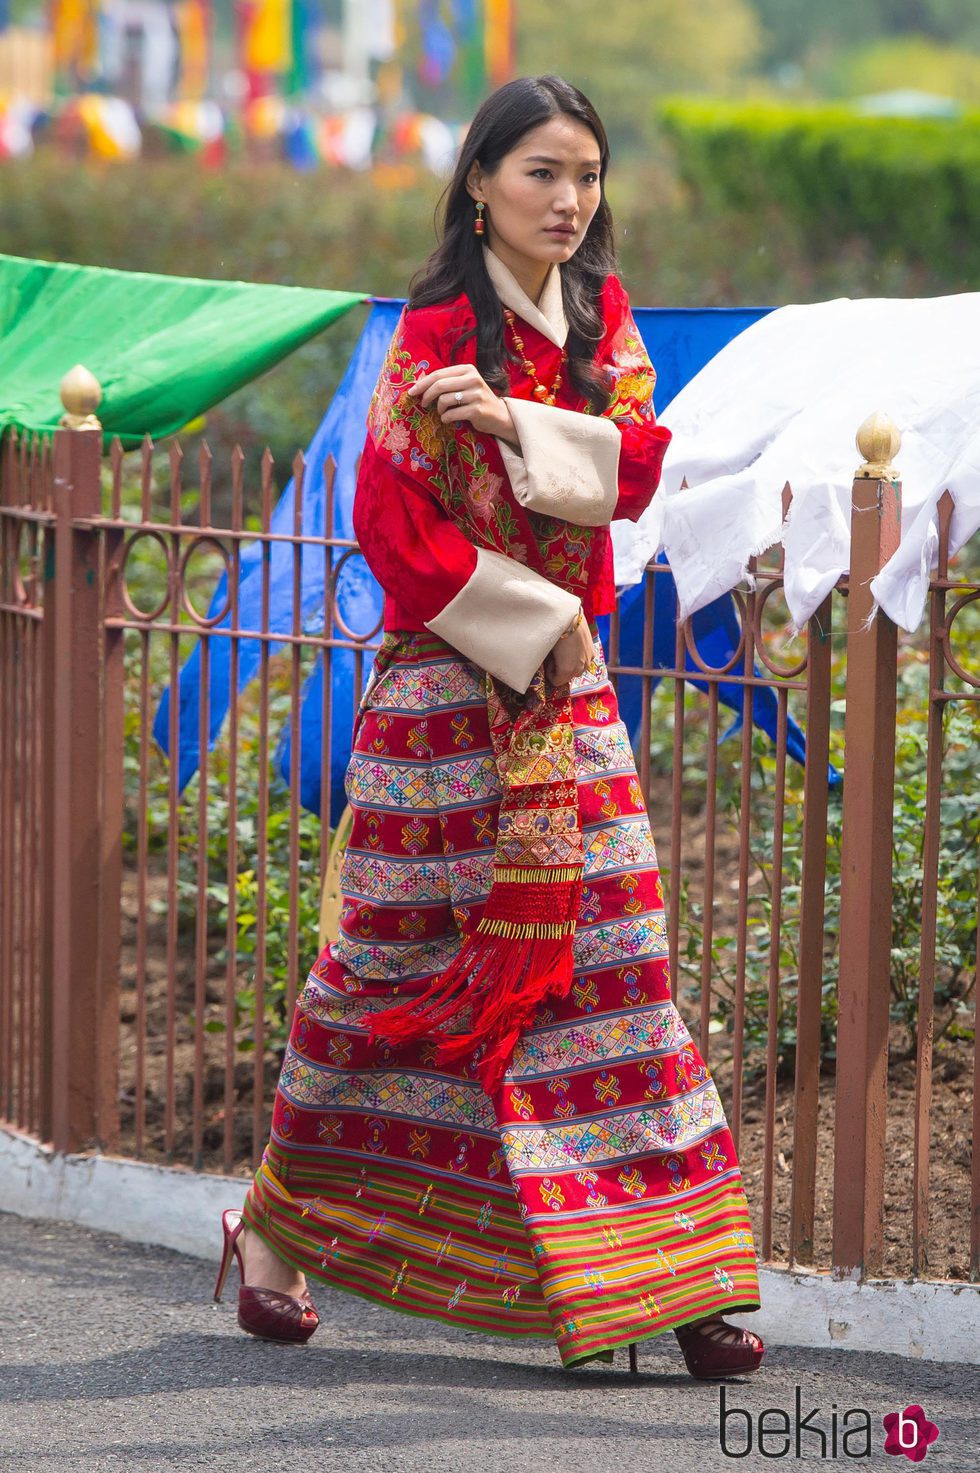 La Reina de Bhutan durante la visita oficial de los Duques de Cambridge a su país